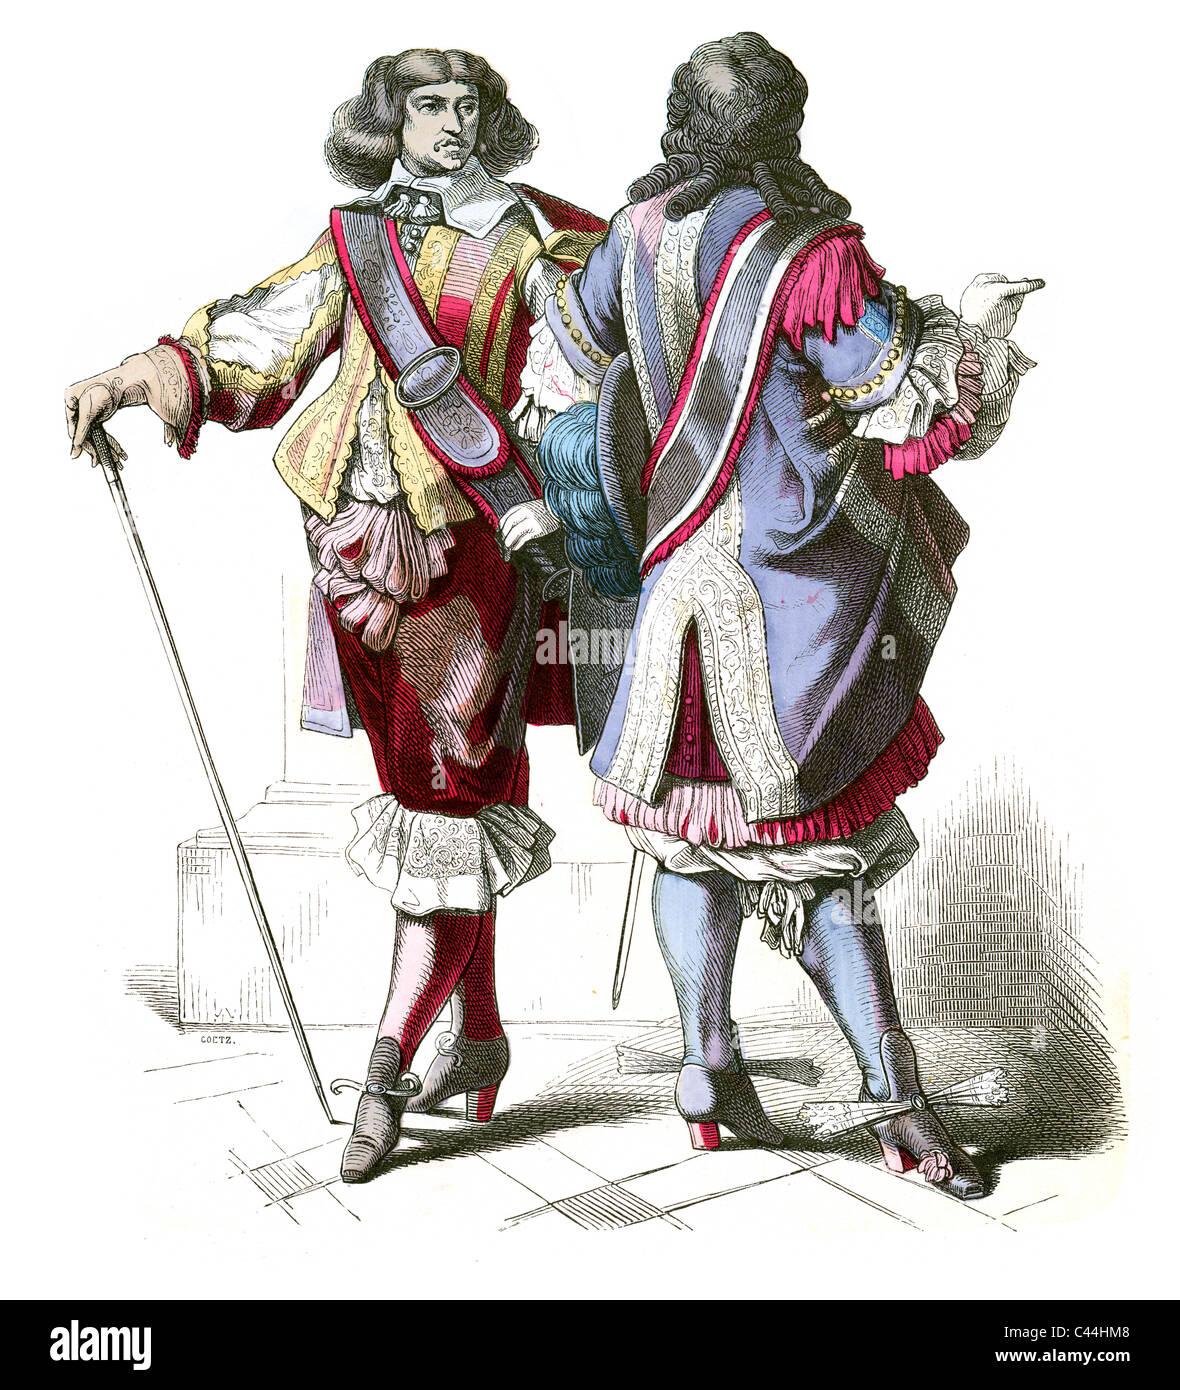 Un des hommes en costumes d'hollandais du 17e siècle Banque D'Images